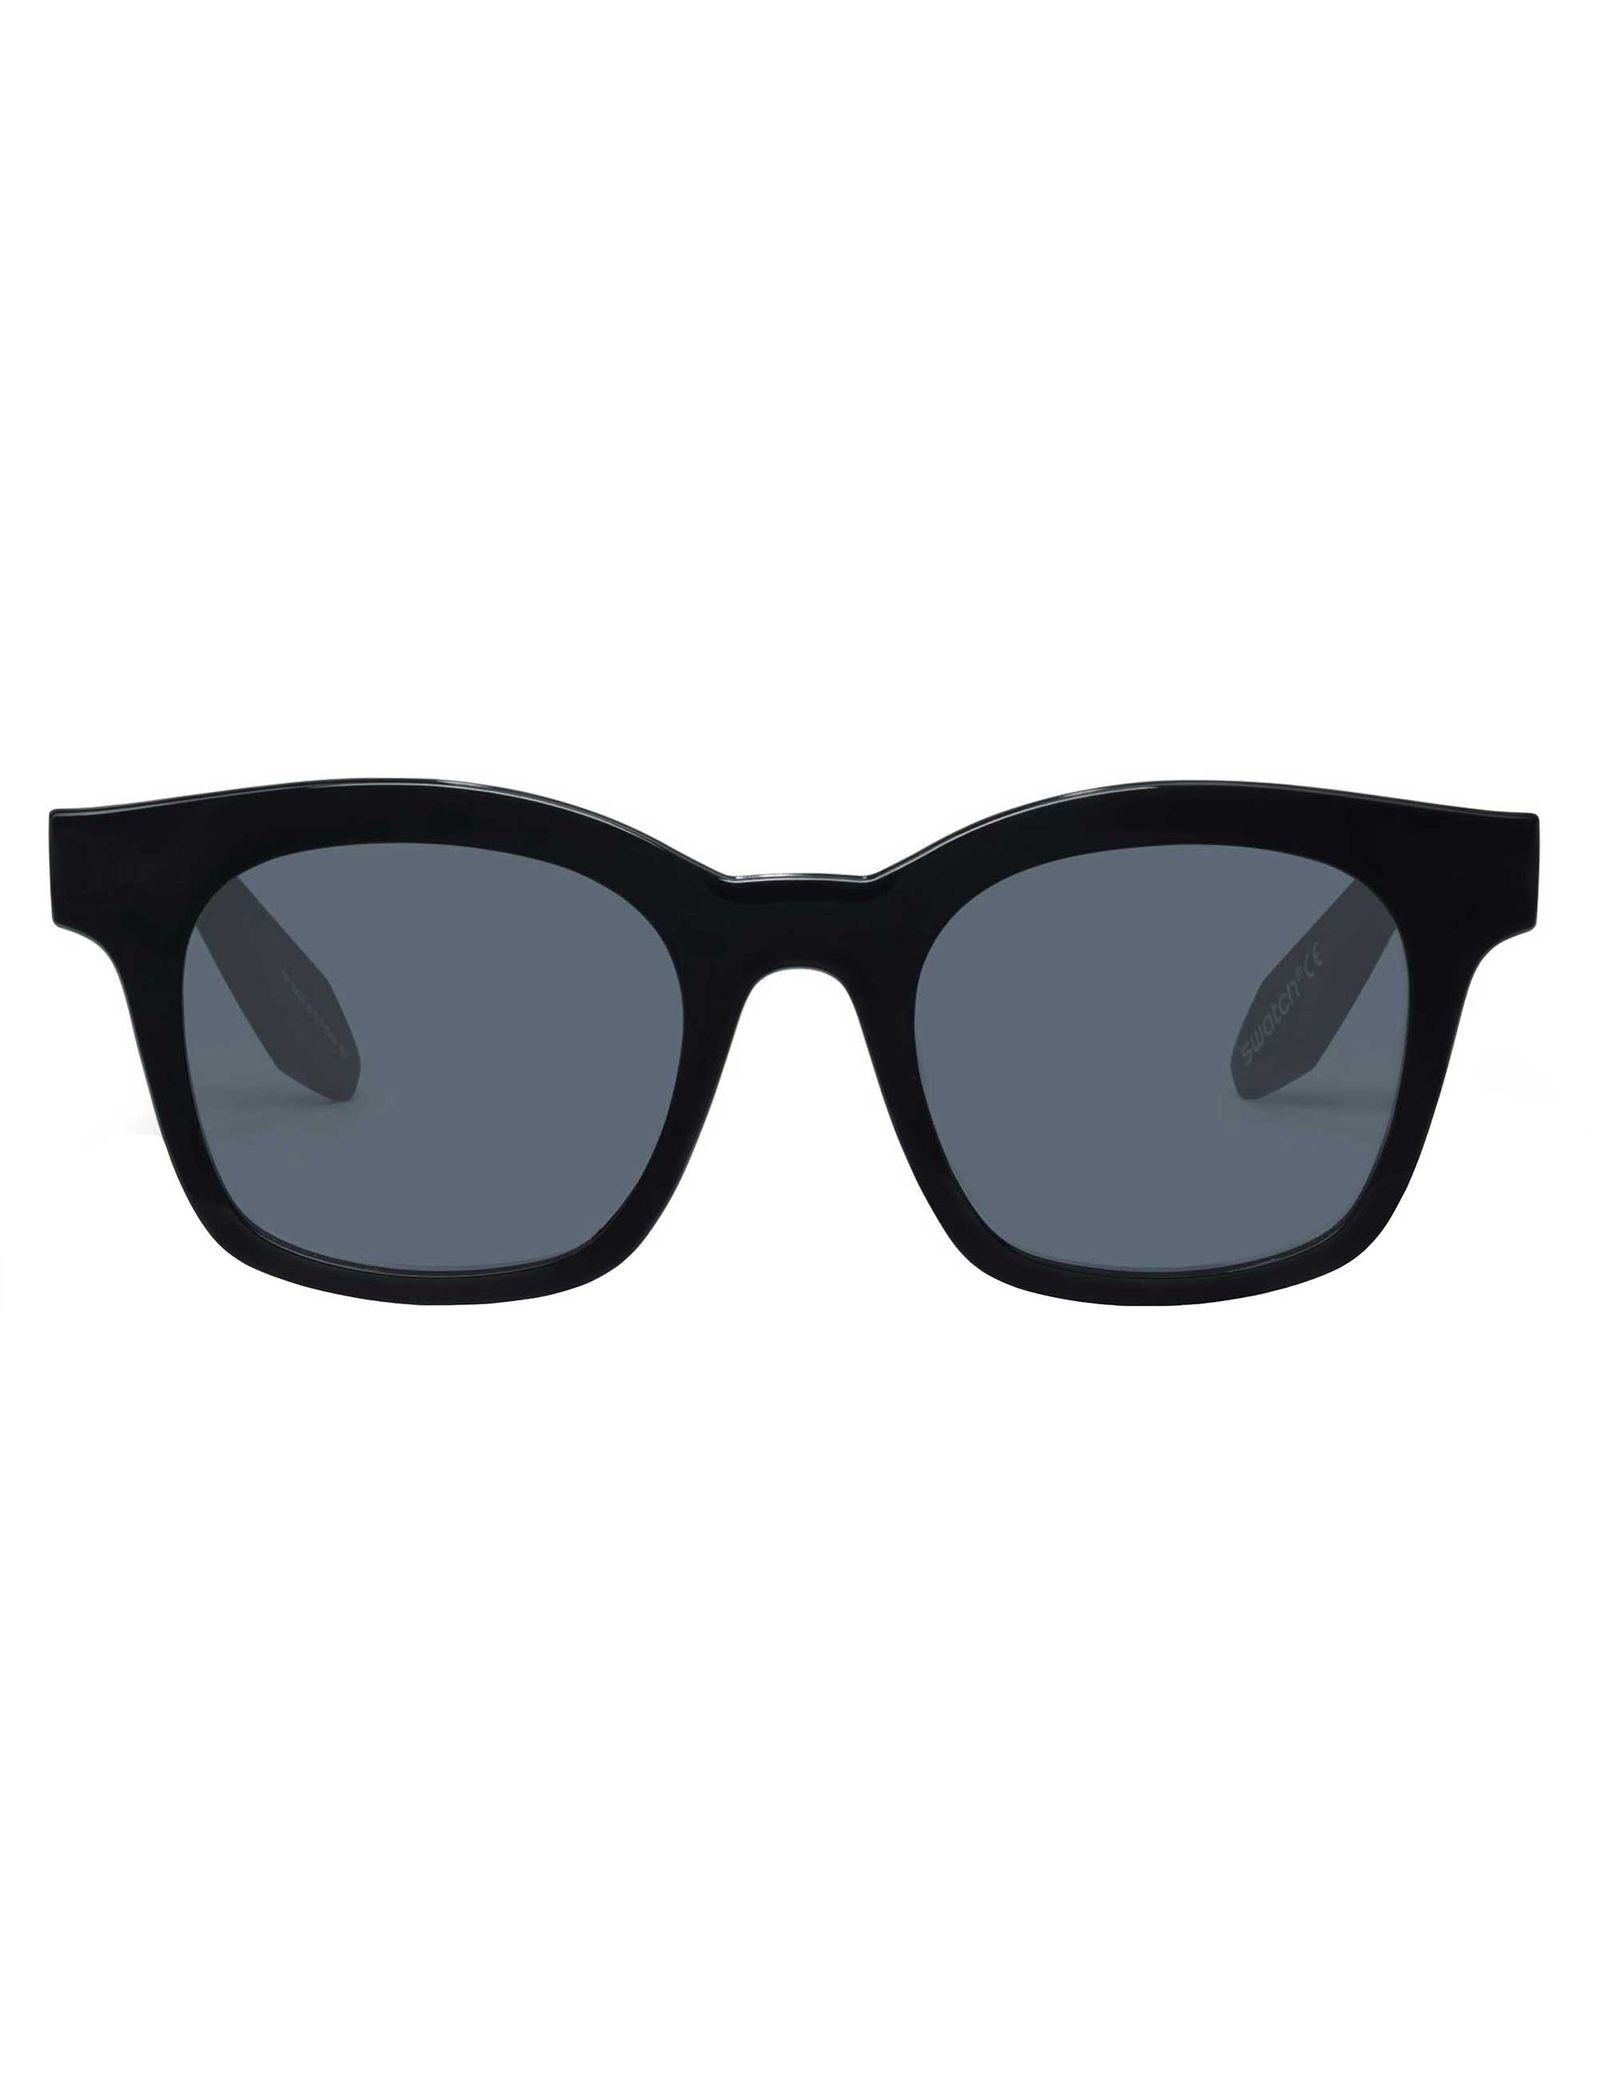 عینک آفتابی سواچ مدل SES02SMB025 - مشکی - 2